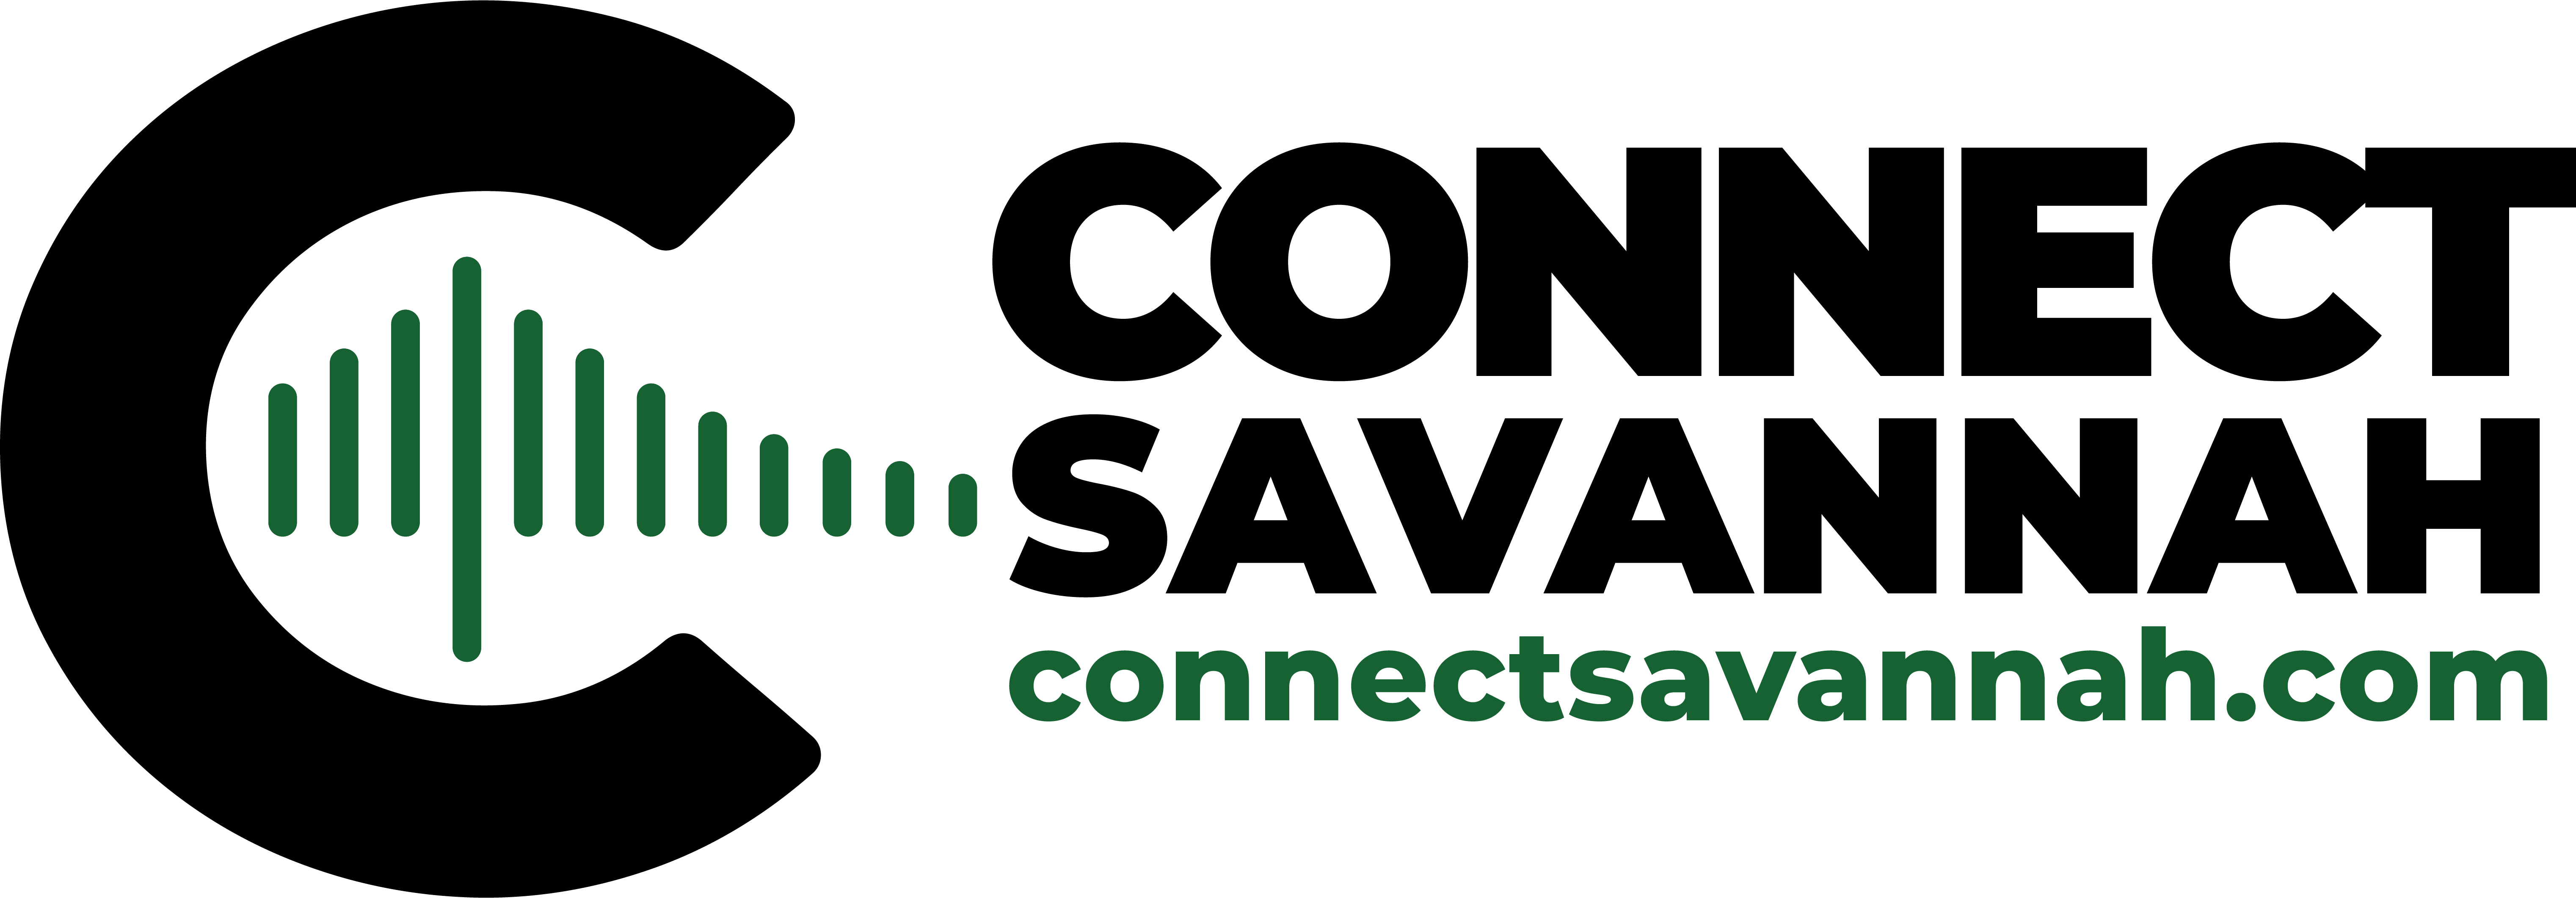 Connect Savannah logo